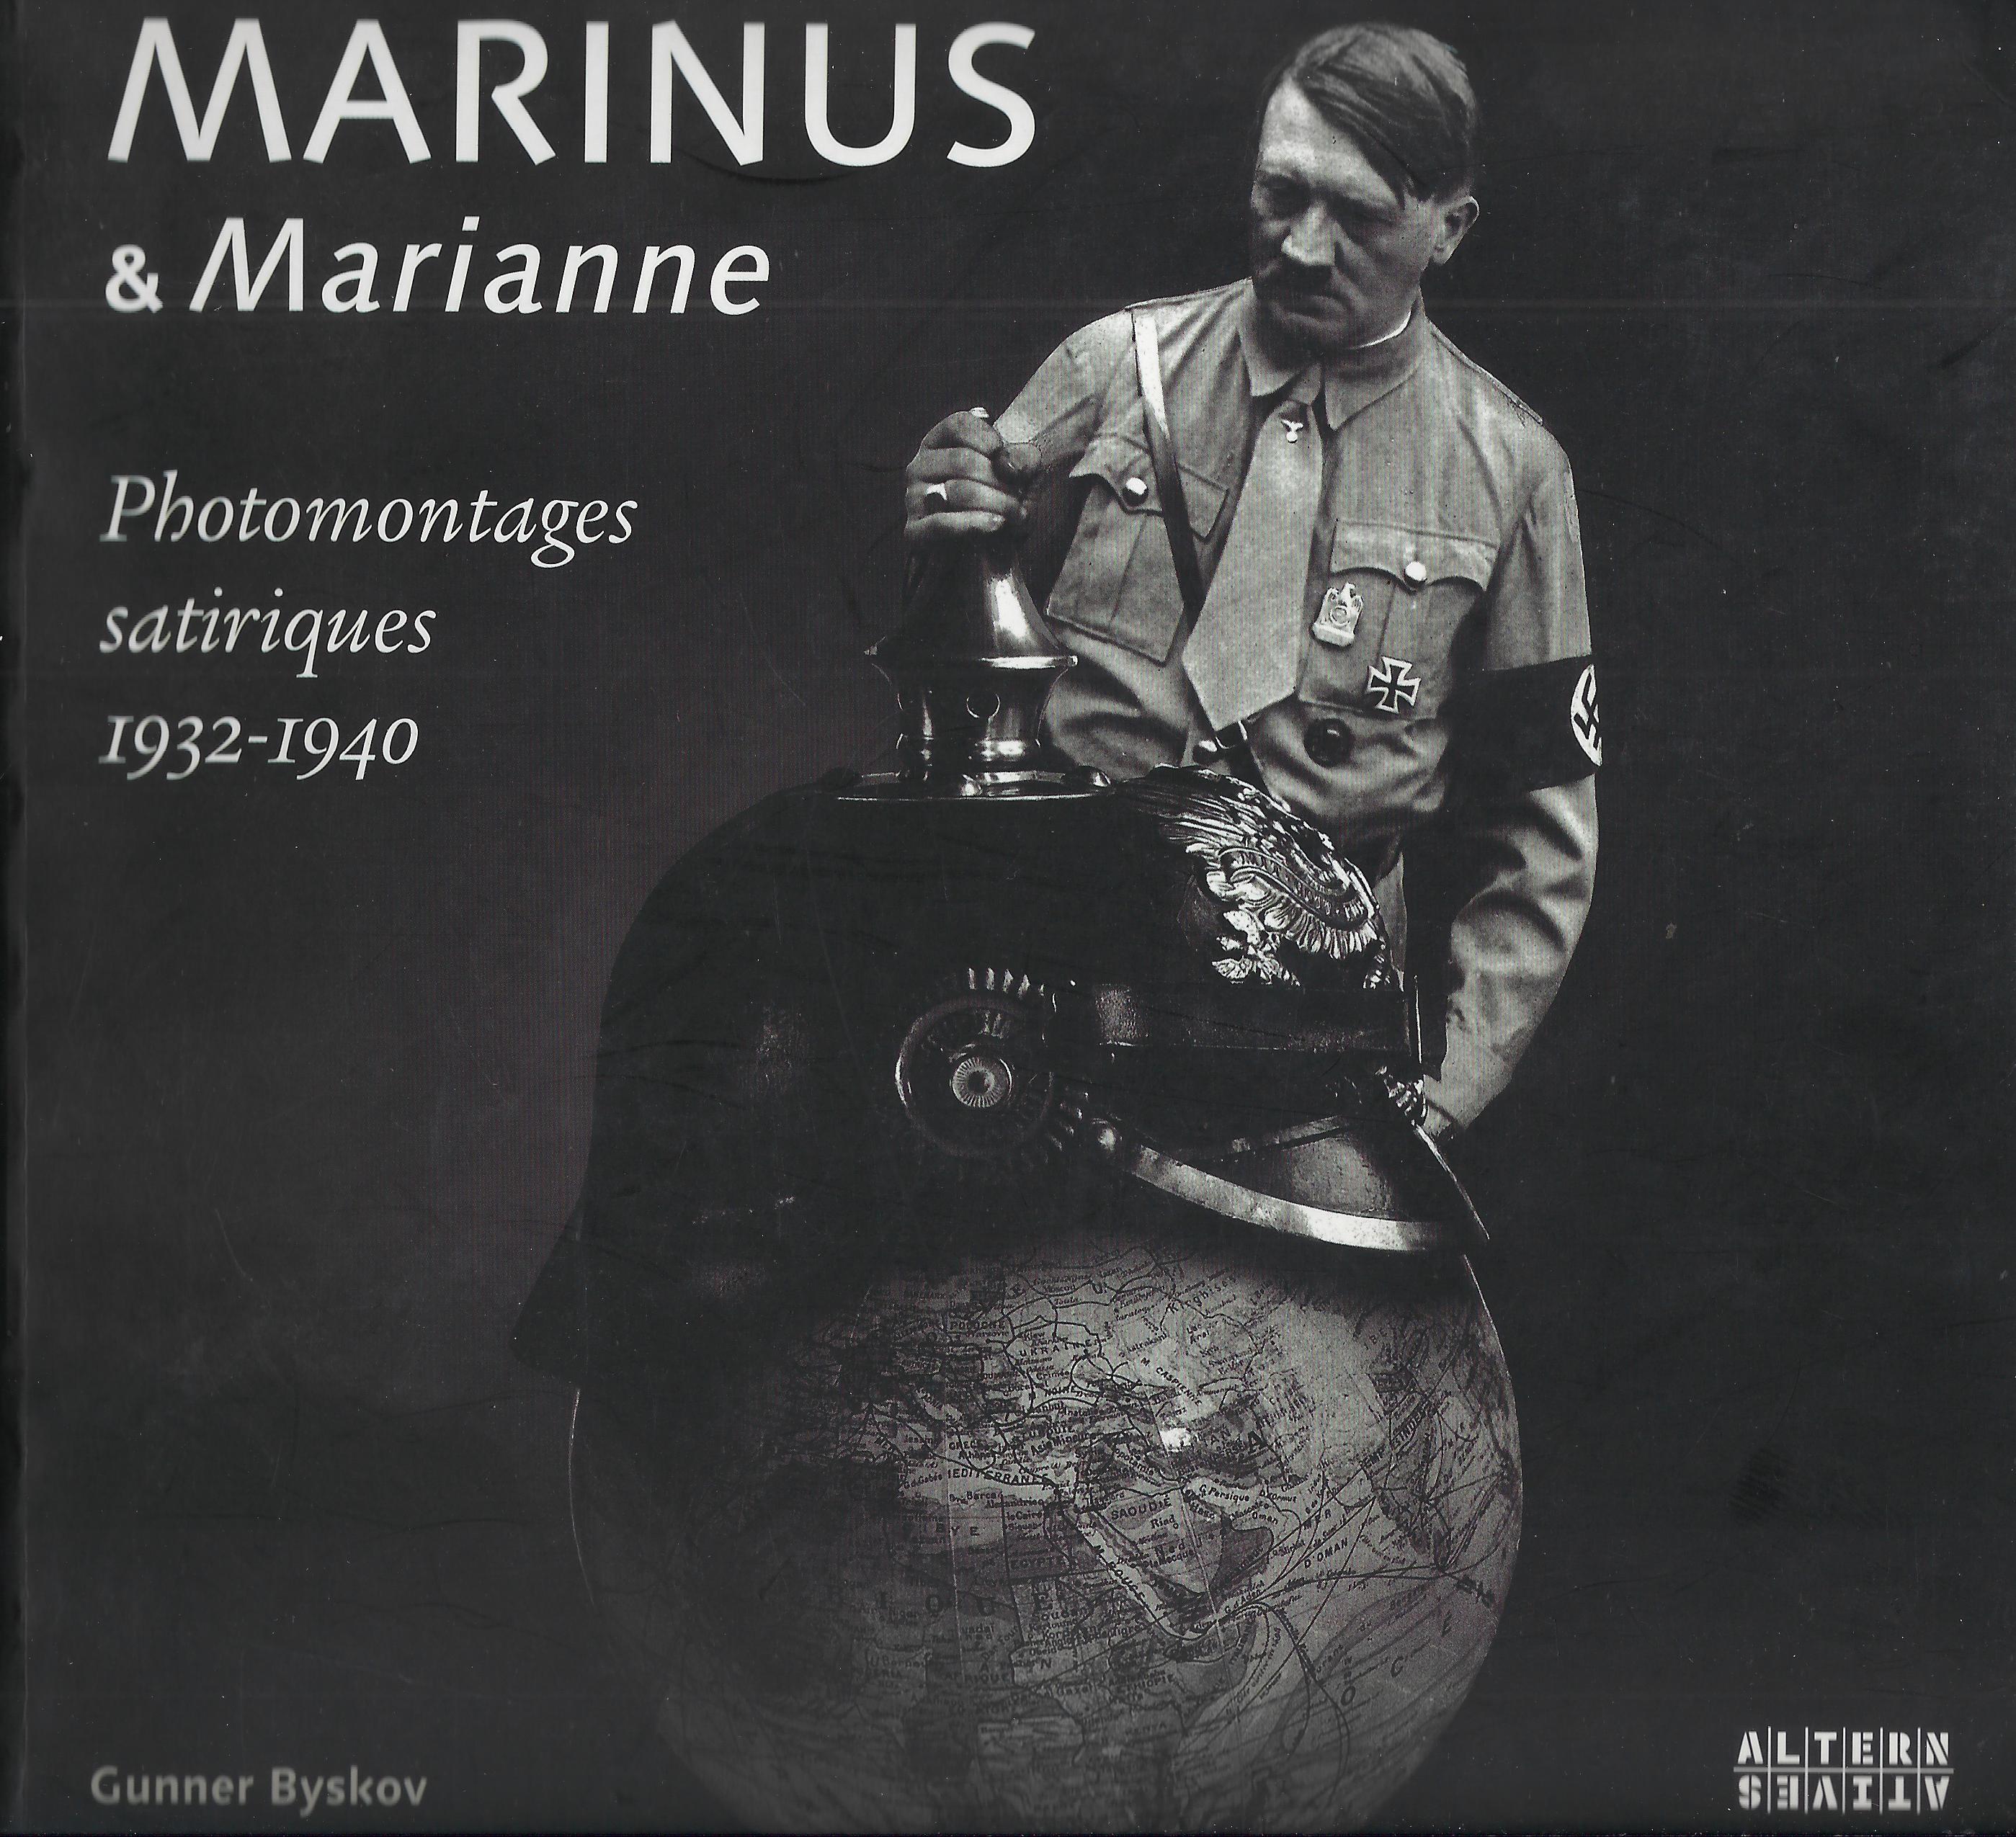 Marinus & Marianne: Photomontages satiriques 1932-1940 - Byskov, Gunner